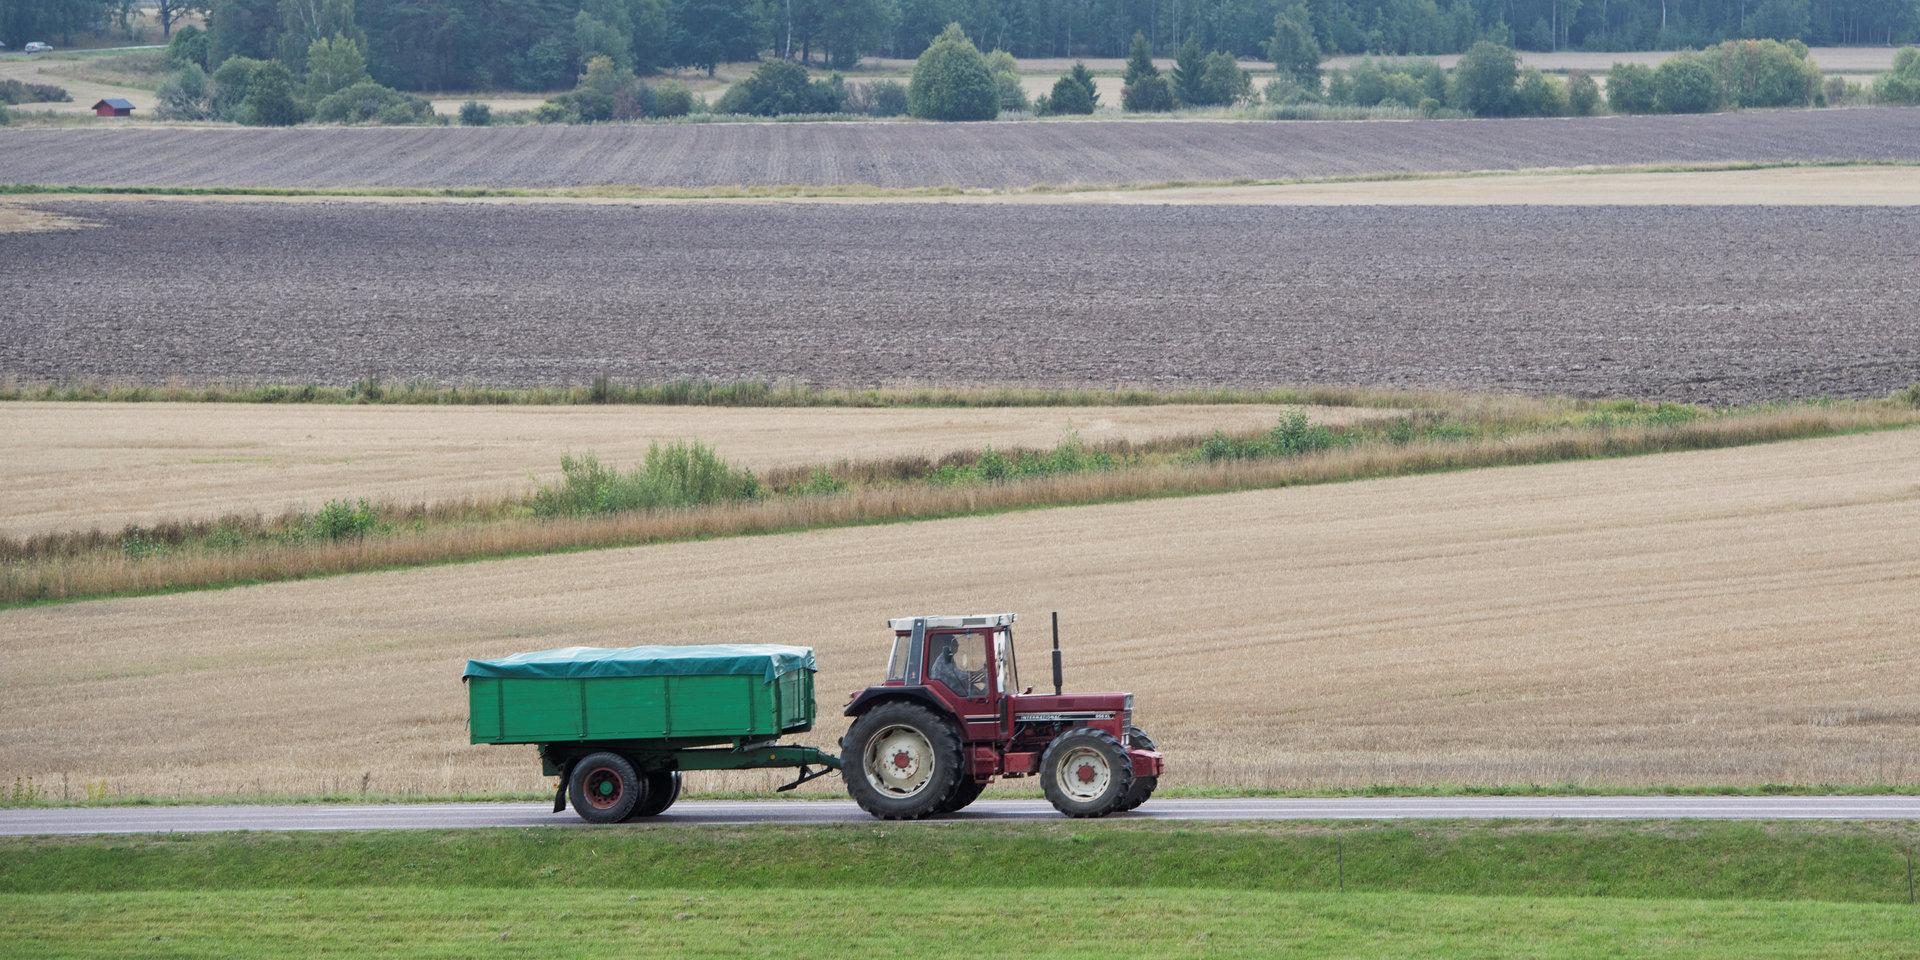 Jordbruksstöd. När EU behöver spara är jordbrukspolitiken ett naturligt ställe att börja.